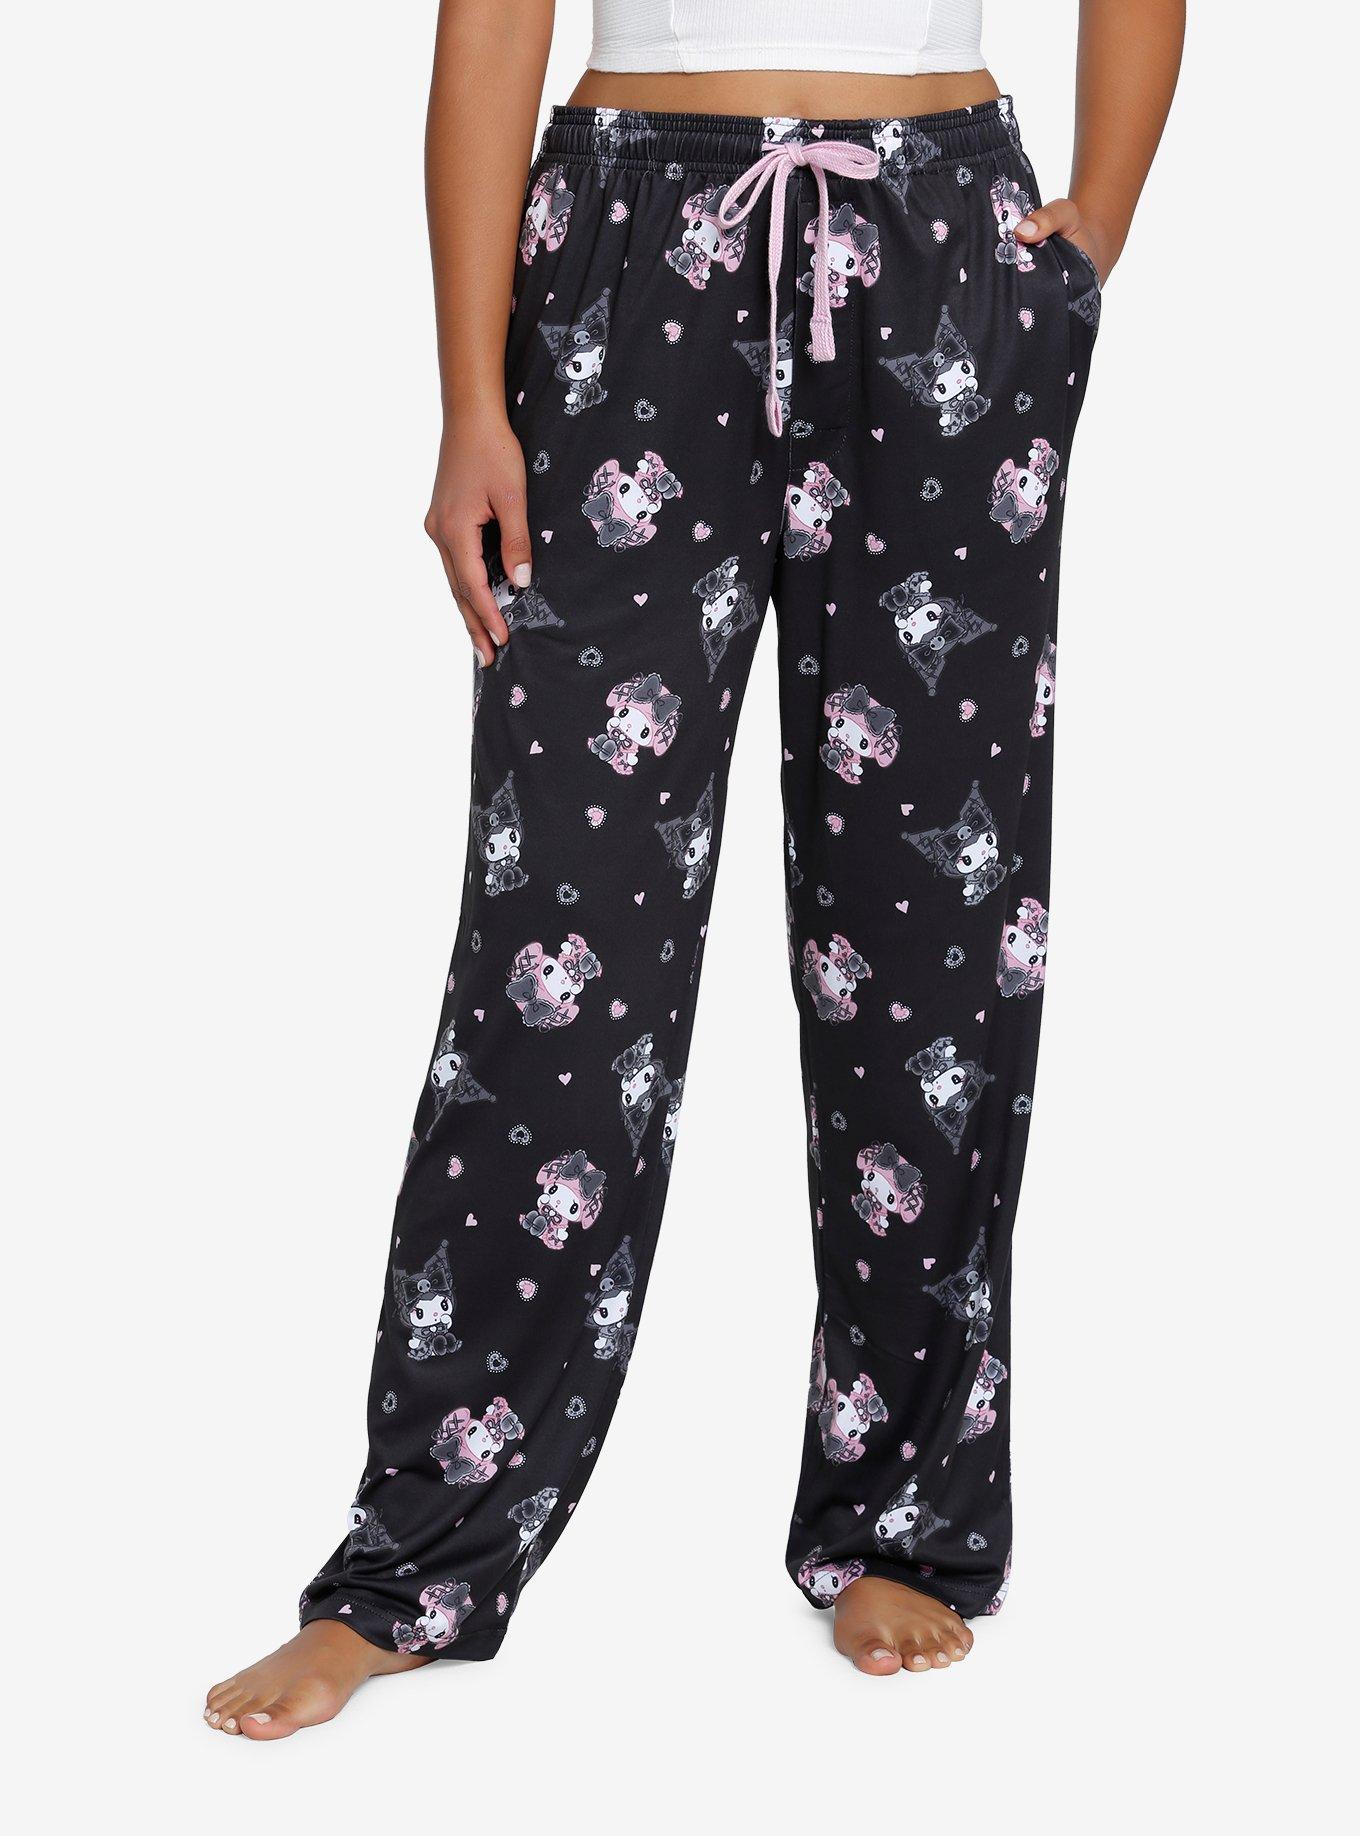 Kuromi Flannel Pajama Pants, Forever 21